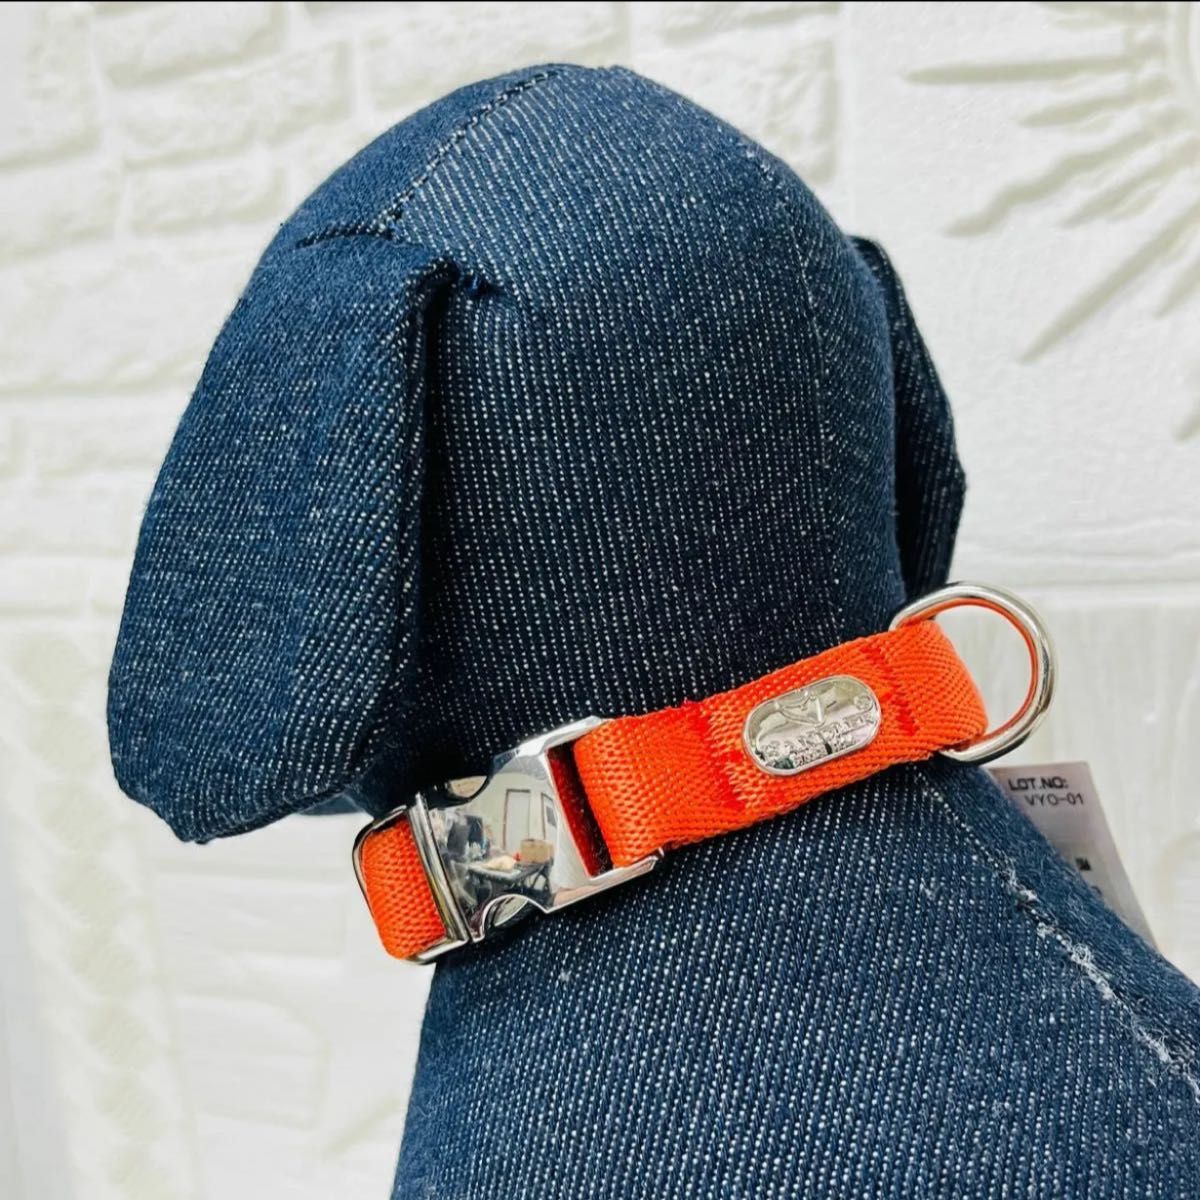 ラスト1点 新品 HANDLER クッション首輪 10kg迄 メタルバックル オレンジ（橙色） Sサイズ 小型犬用 アースペット